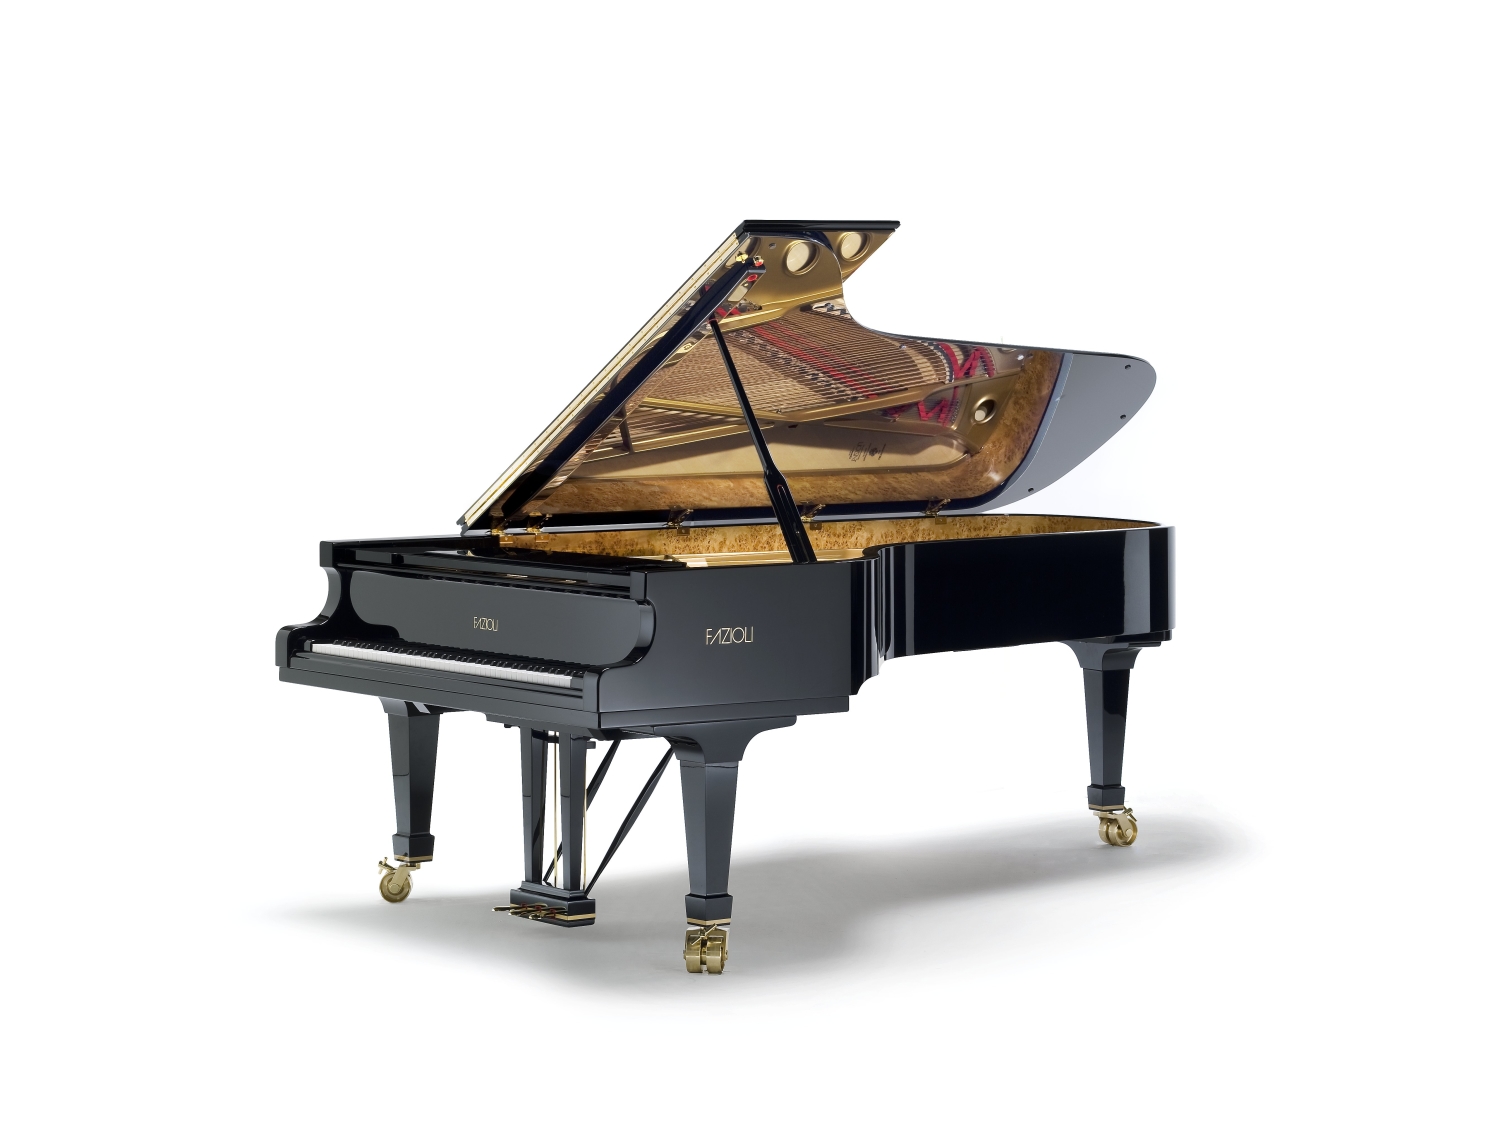 Tüm Fazioli Piyanolarının (ve Fazioli F156) Fiyat ve Stok bilgisi için iletişime geçiniz. http://piyano.kugumuzik.com .